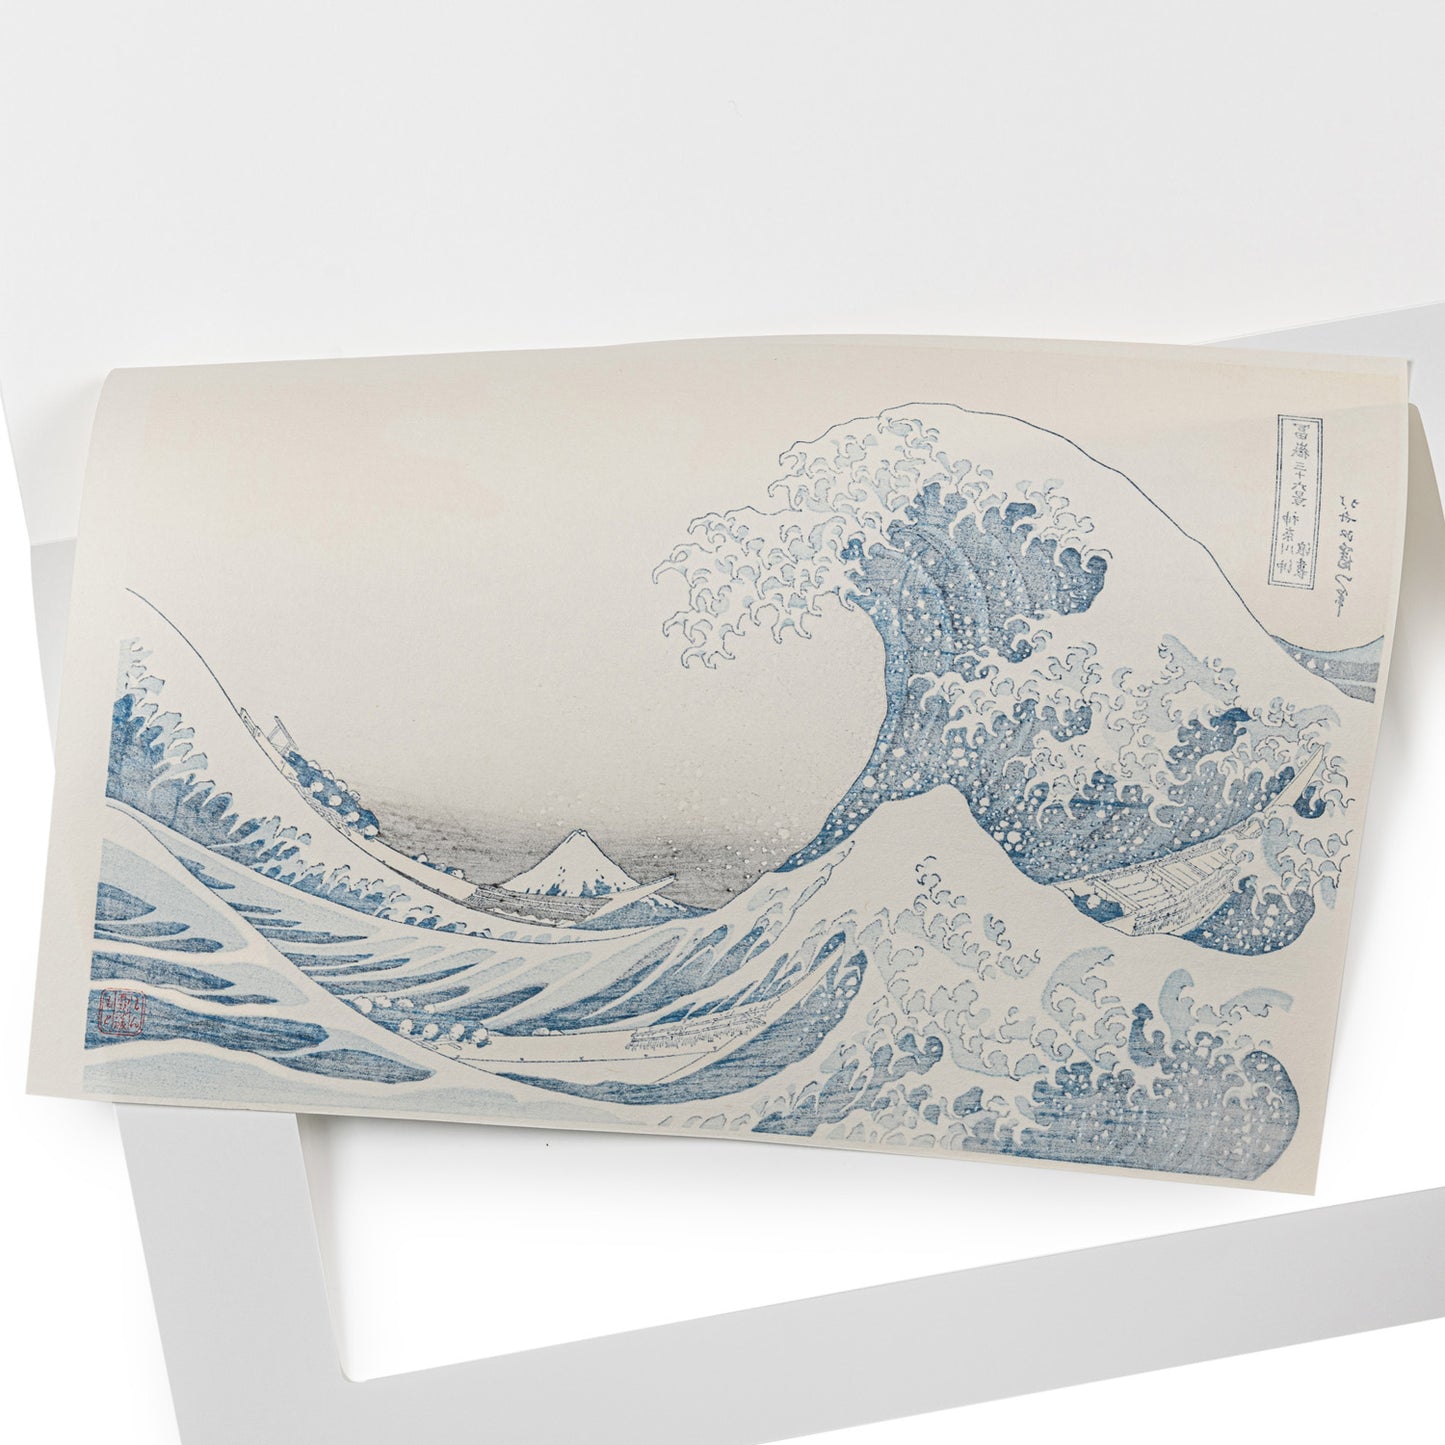 Framed The Great Wave off Kanagawa Woodblock Print